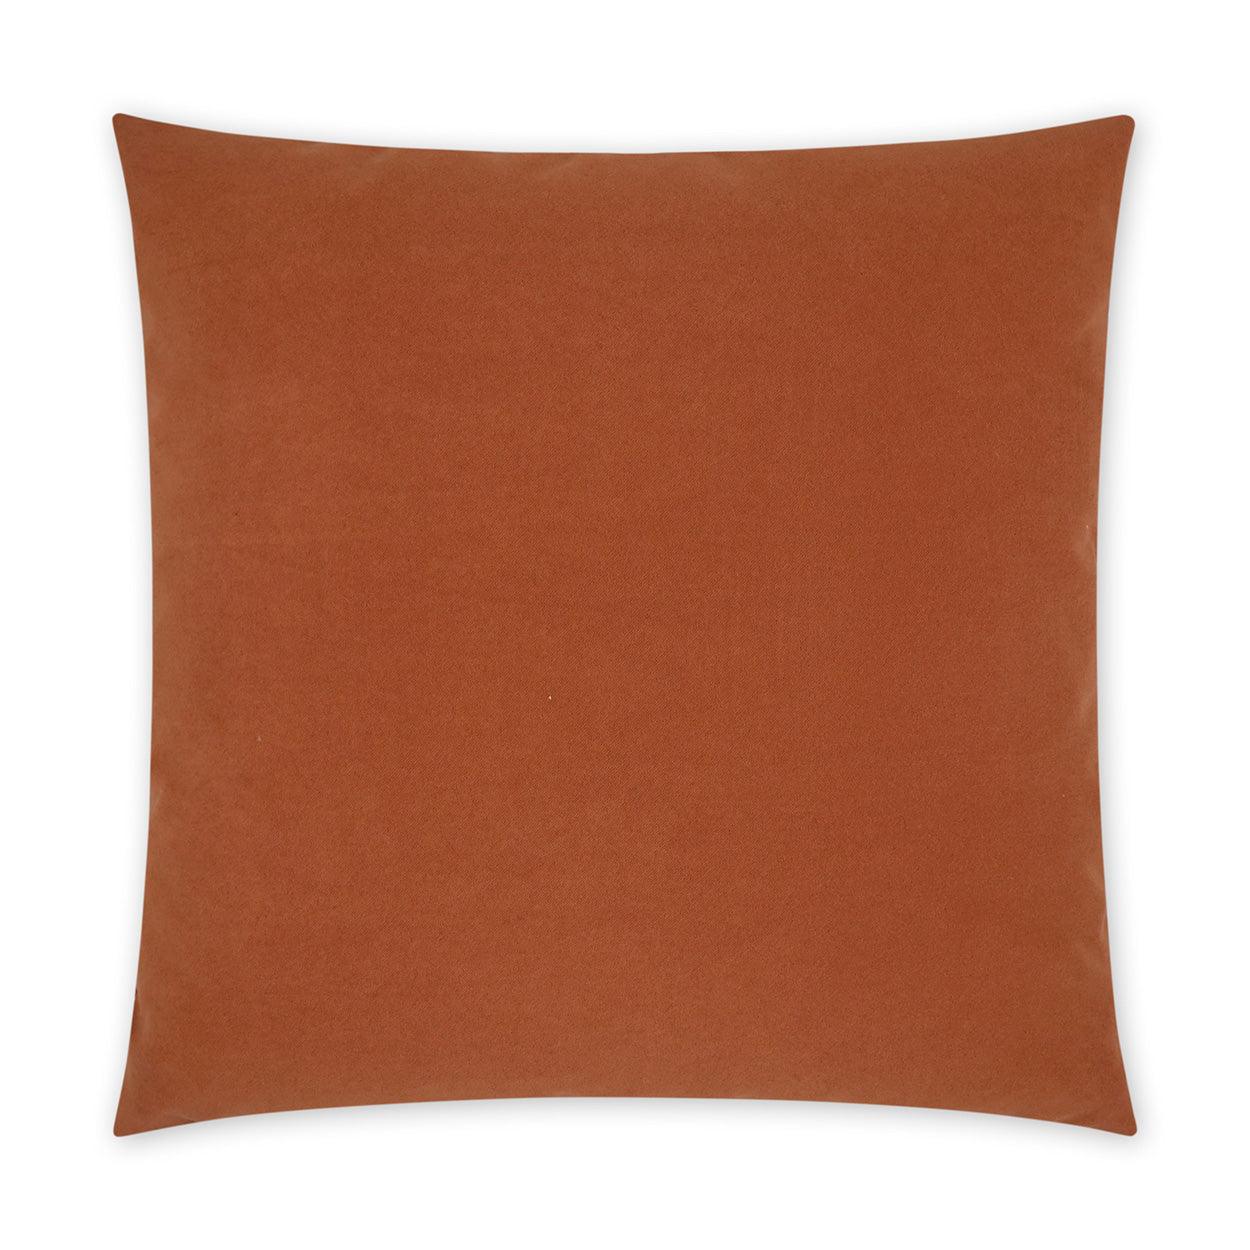 LOOMLAN Outdoor - Outdoor Sundance Pillow - Orange - Outdoor Pillows